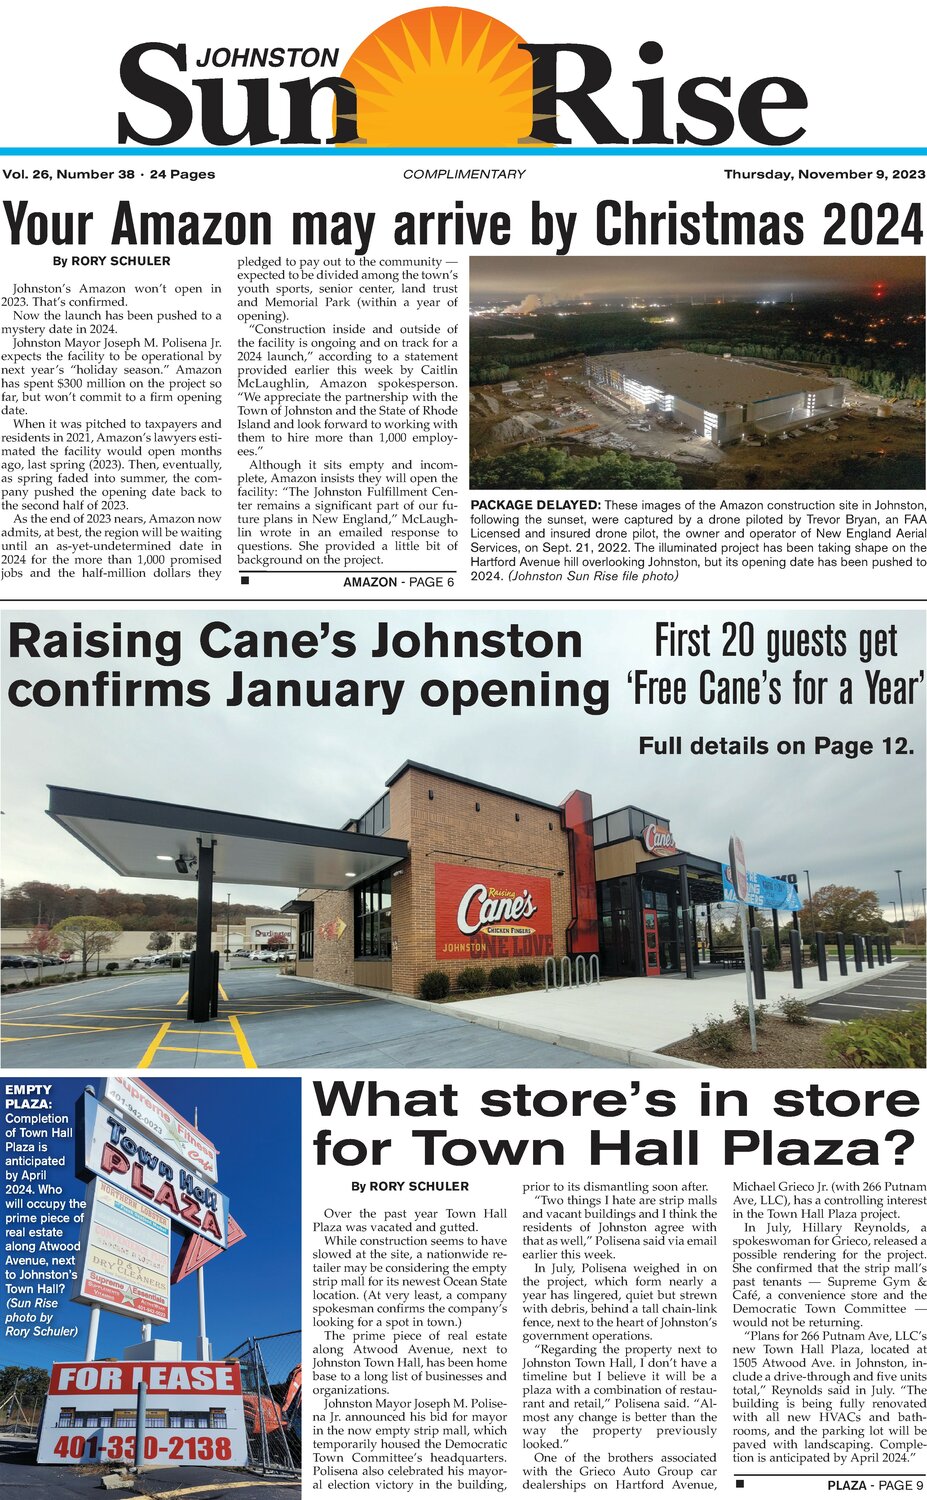 Raising Cane's eyes January opening for Johnston location